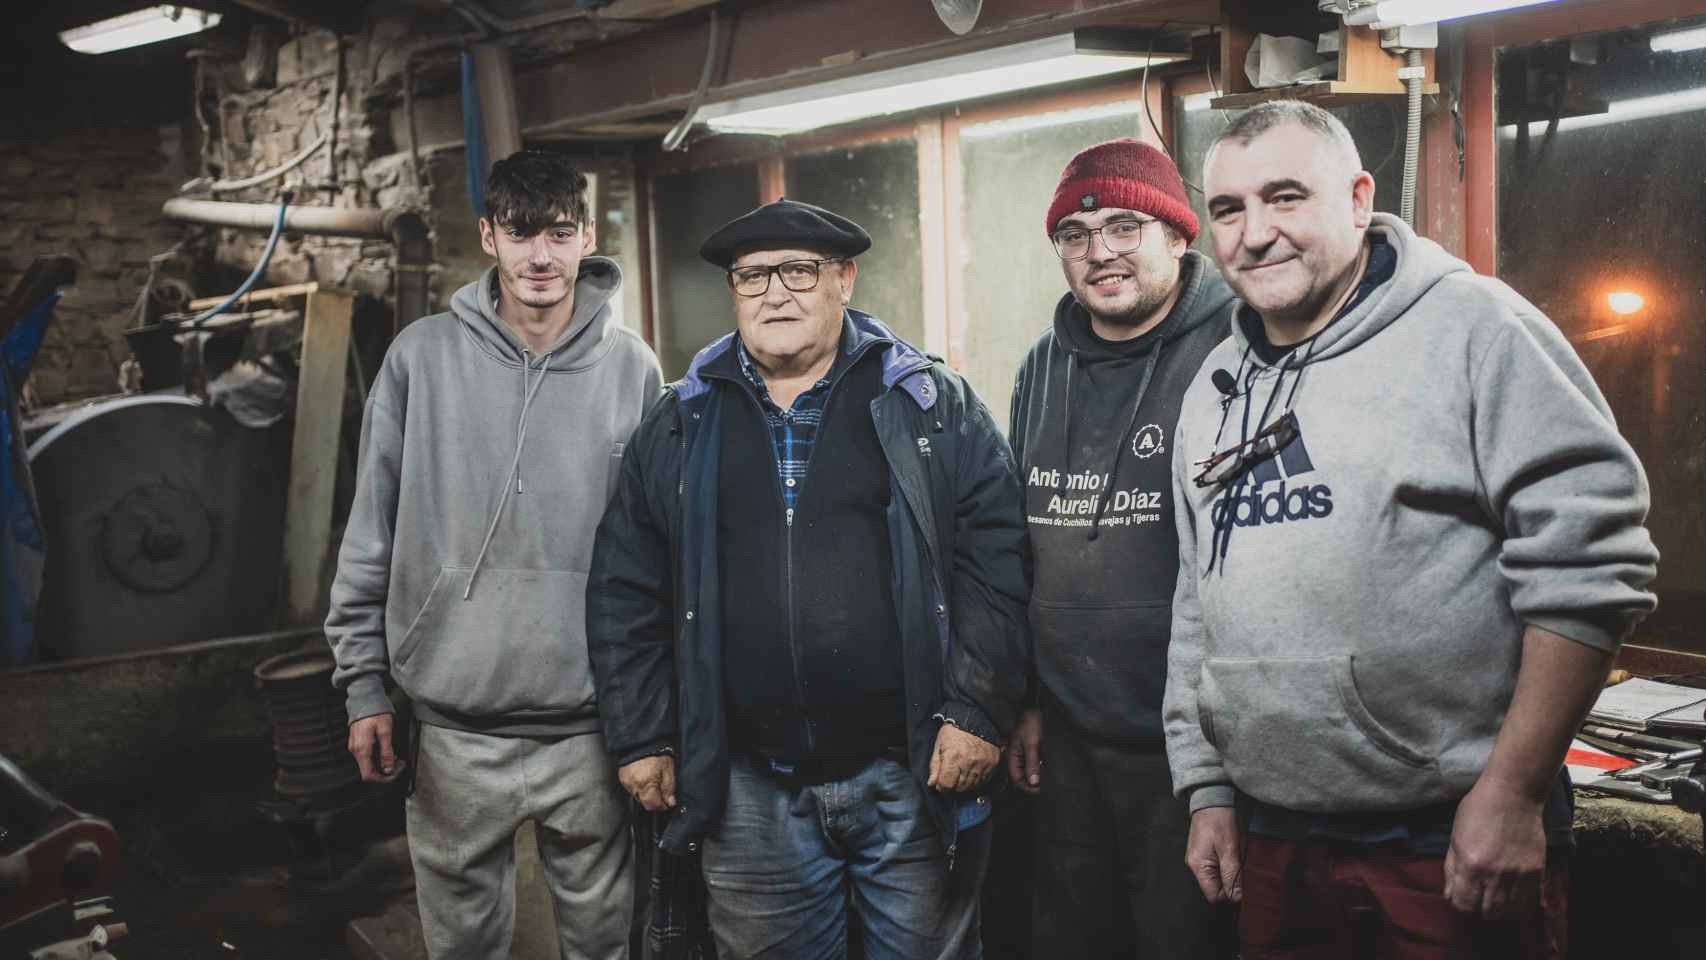 Antonio Díaz y su familia en su taller tradicional de navajas: tres generaciones de maestros cuchilleros unidos por la sangre y la pasión por el oficio.